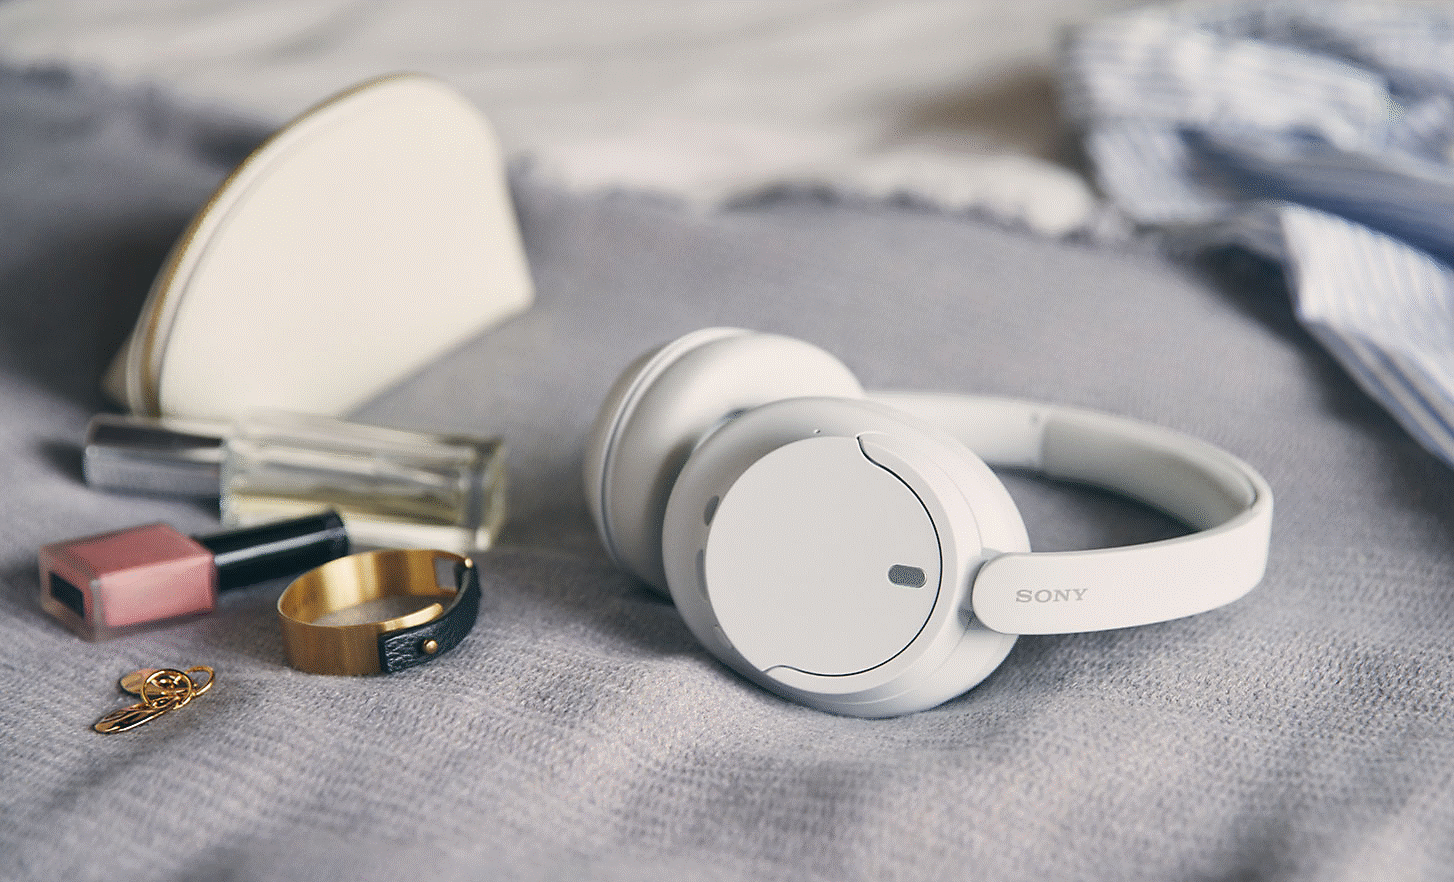 Imagen de unos auriculares blancos WH-CH720 de Sony sobre una cama con algunos accesorios